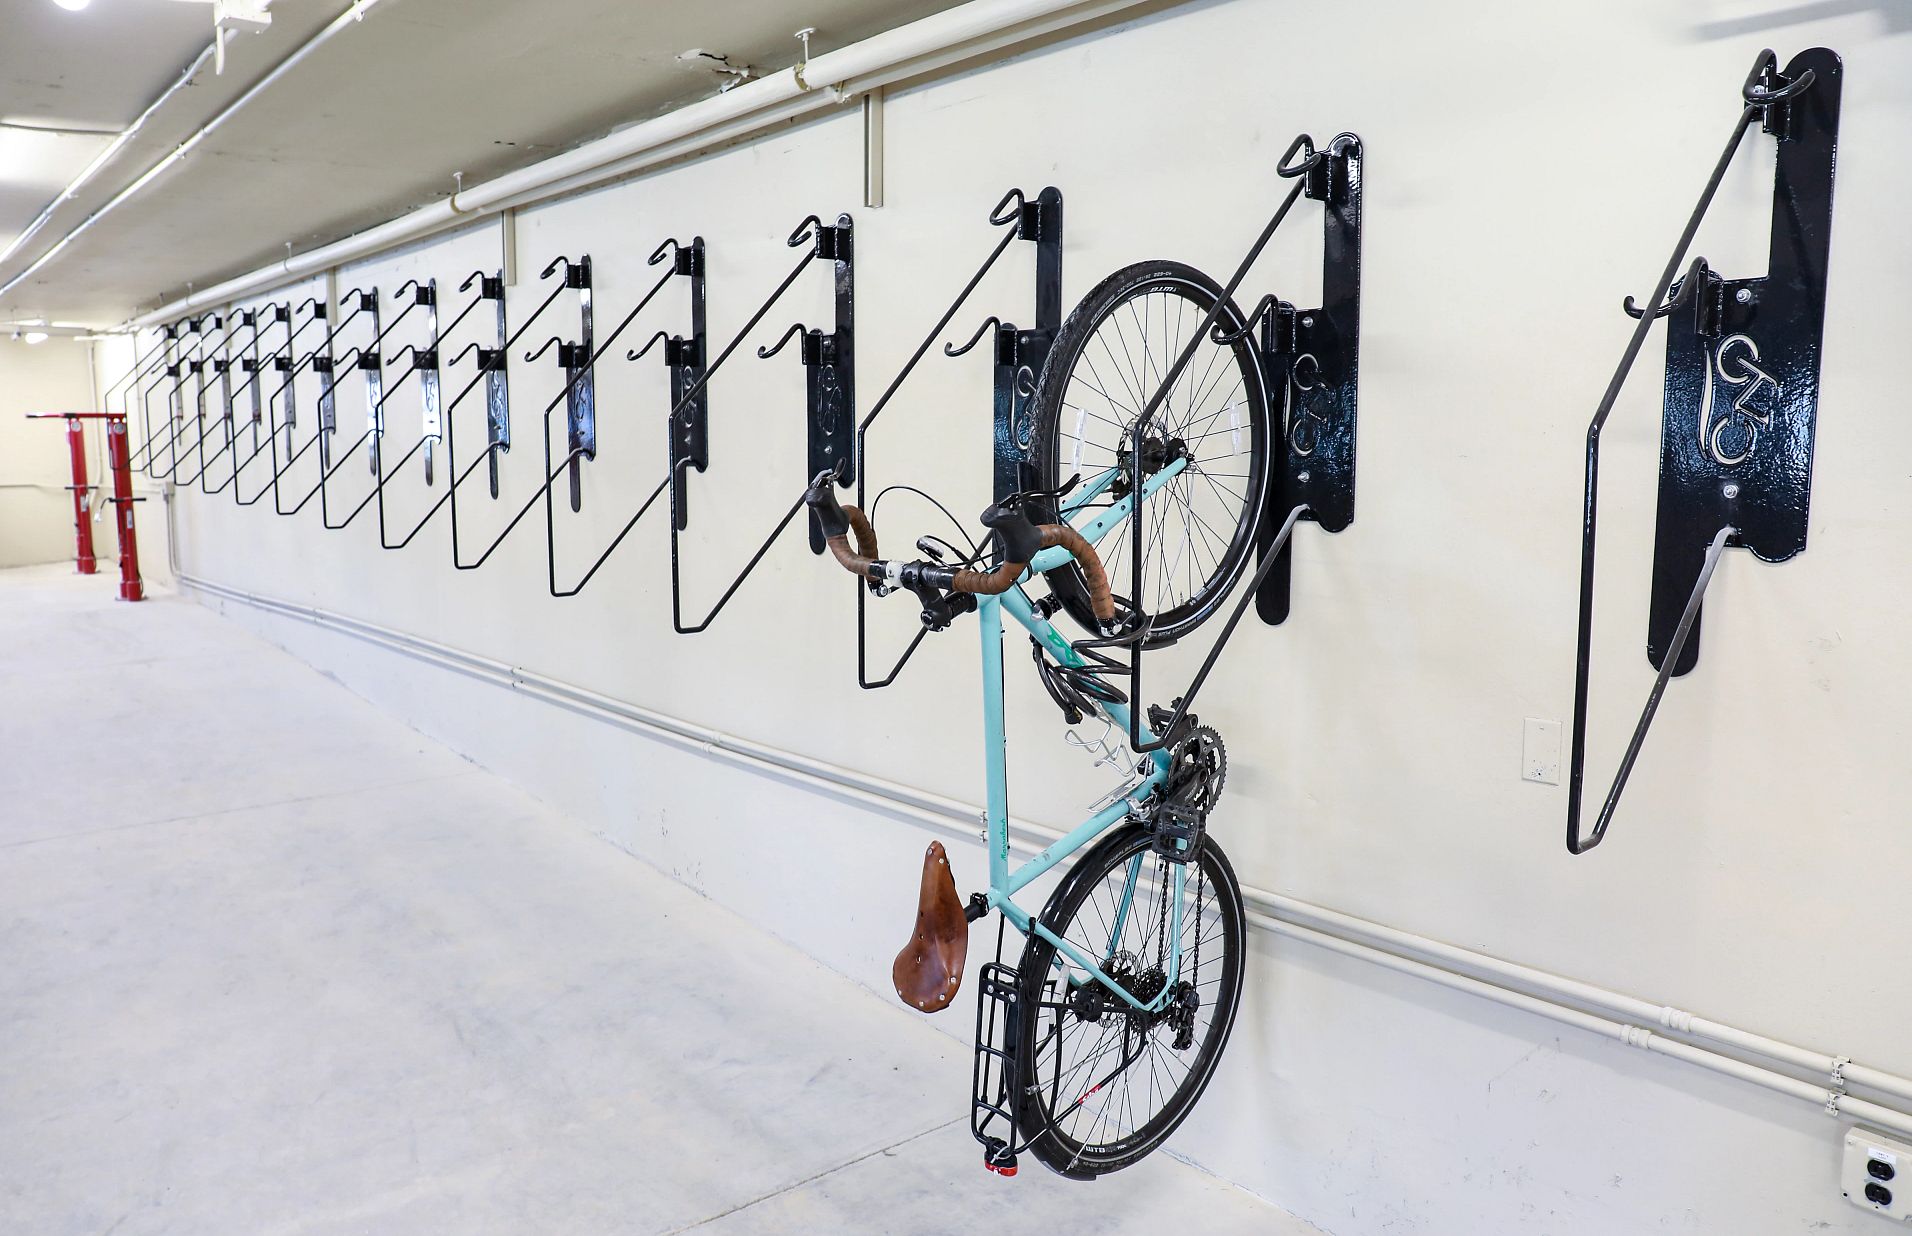 A bike hangs on a vertically mounted bike rack